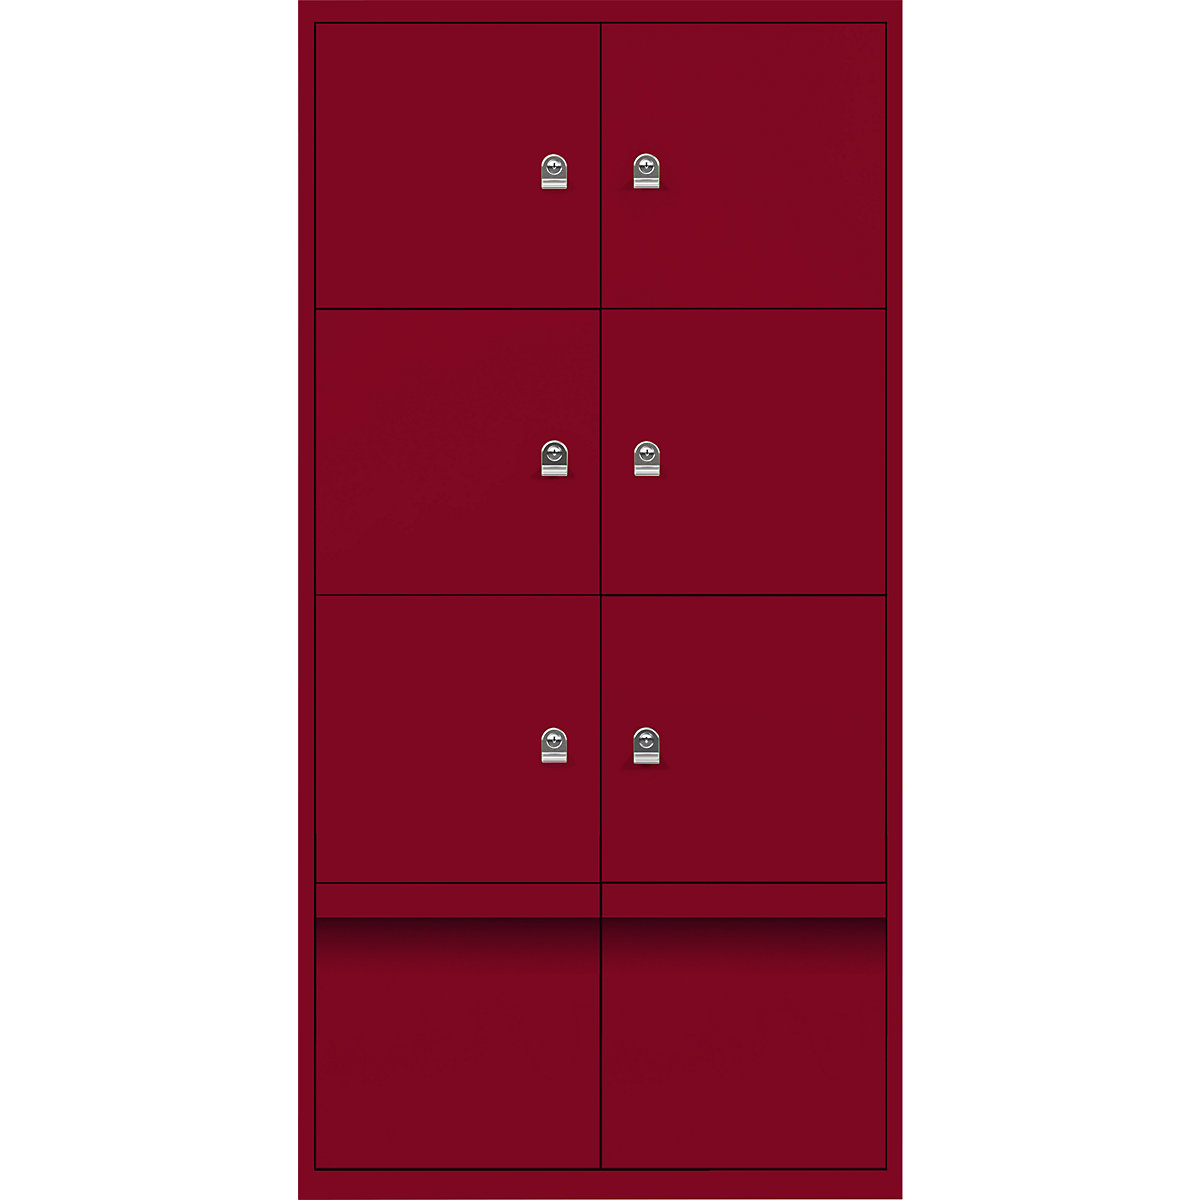 Armadietto LateralFile™ – BISLEY, con 6 scomparti con serratura e 2 cassetti, altezza 375 mm ciascuno, rosso cardinale-22